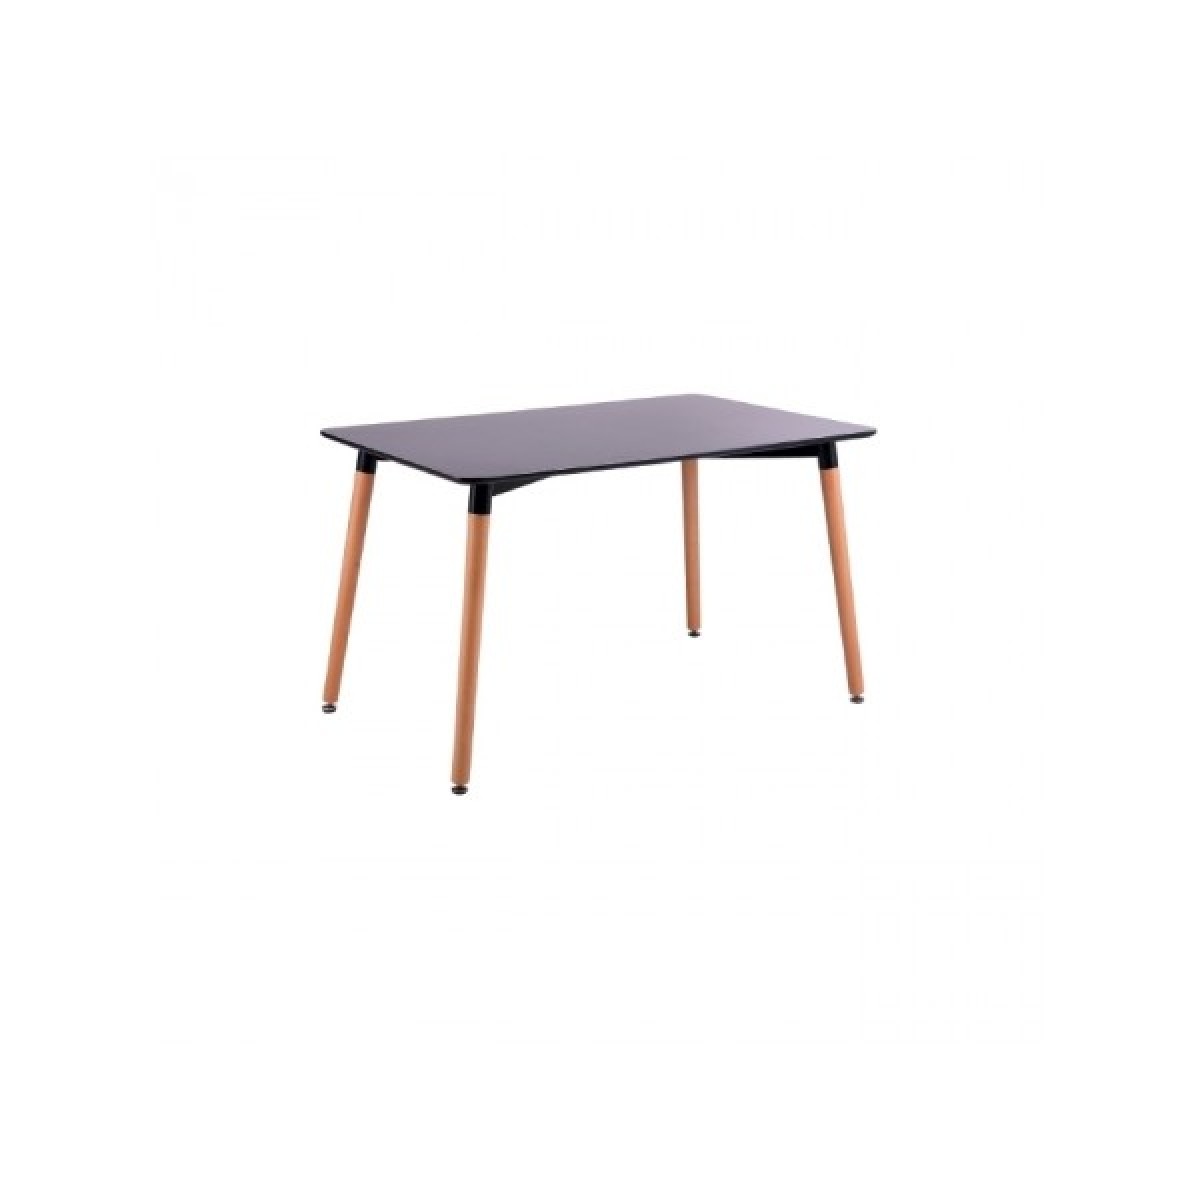 Τραπέζι Art ξύλινο 120Χ80 απο MDF σε μαύρο χρώμα και ξύλινα πόδια σε φυσικό χρώμα E7088.2